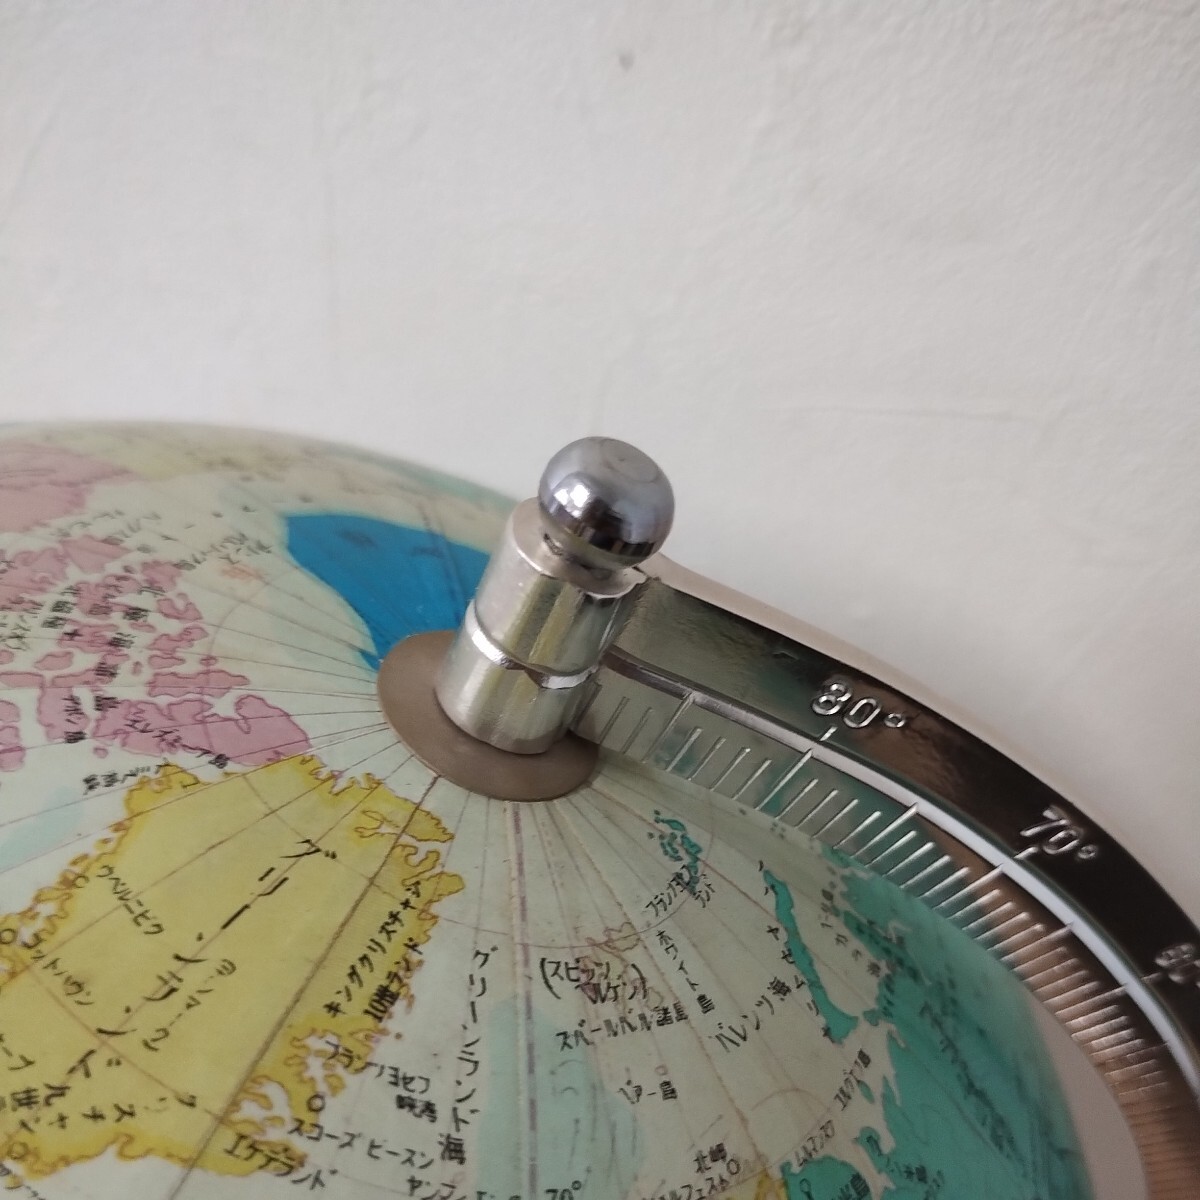  глобус retro карта мира интерьер античный произведение искусства смешанные товары география 